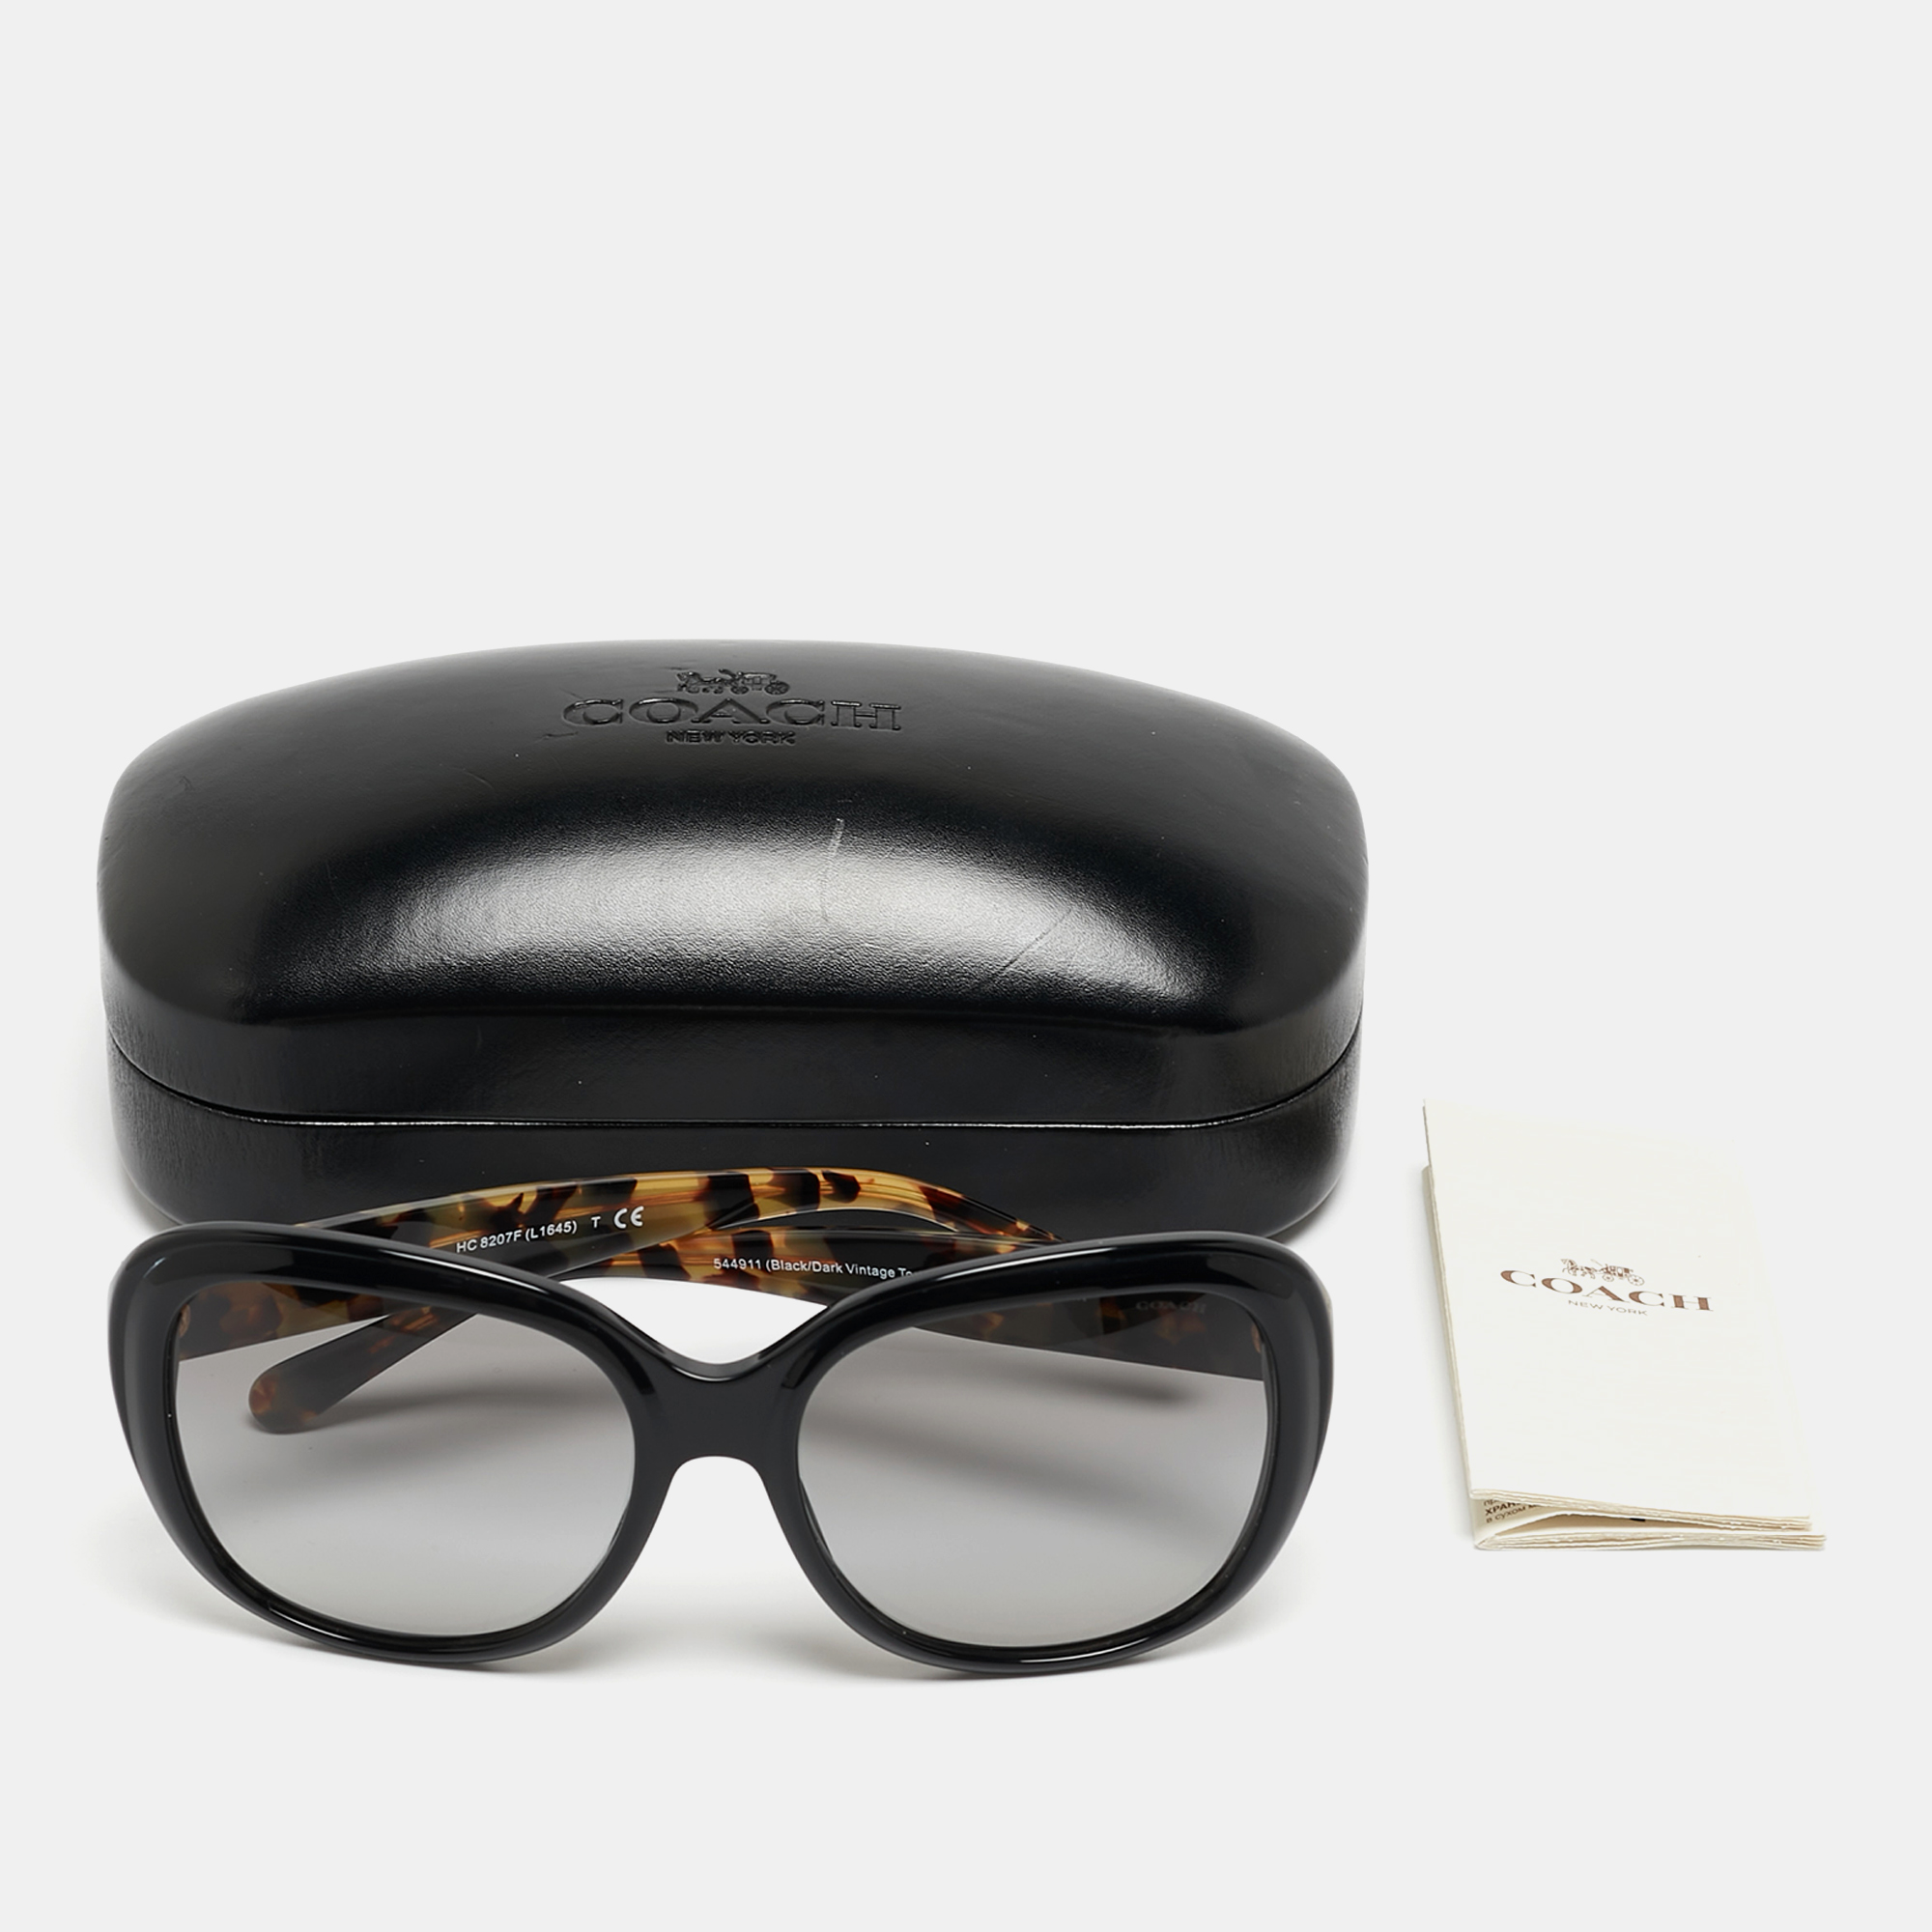 Coach Black/Dark Vintage Tortoise Round Sunglasses